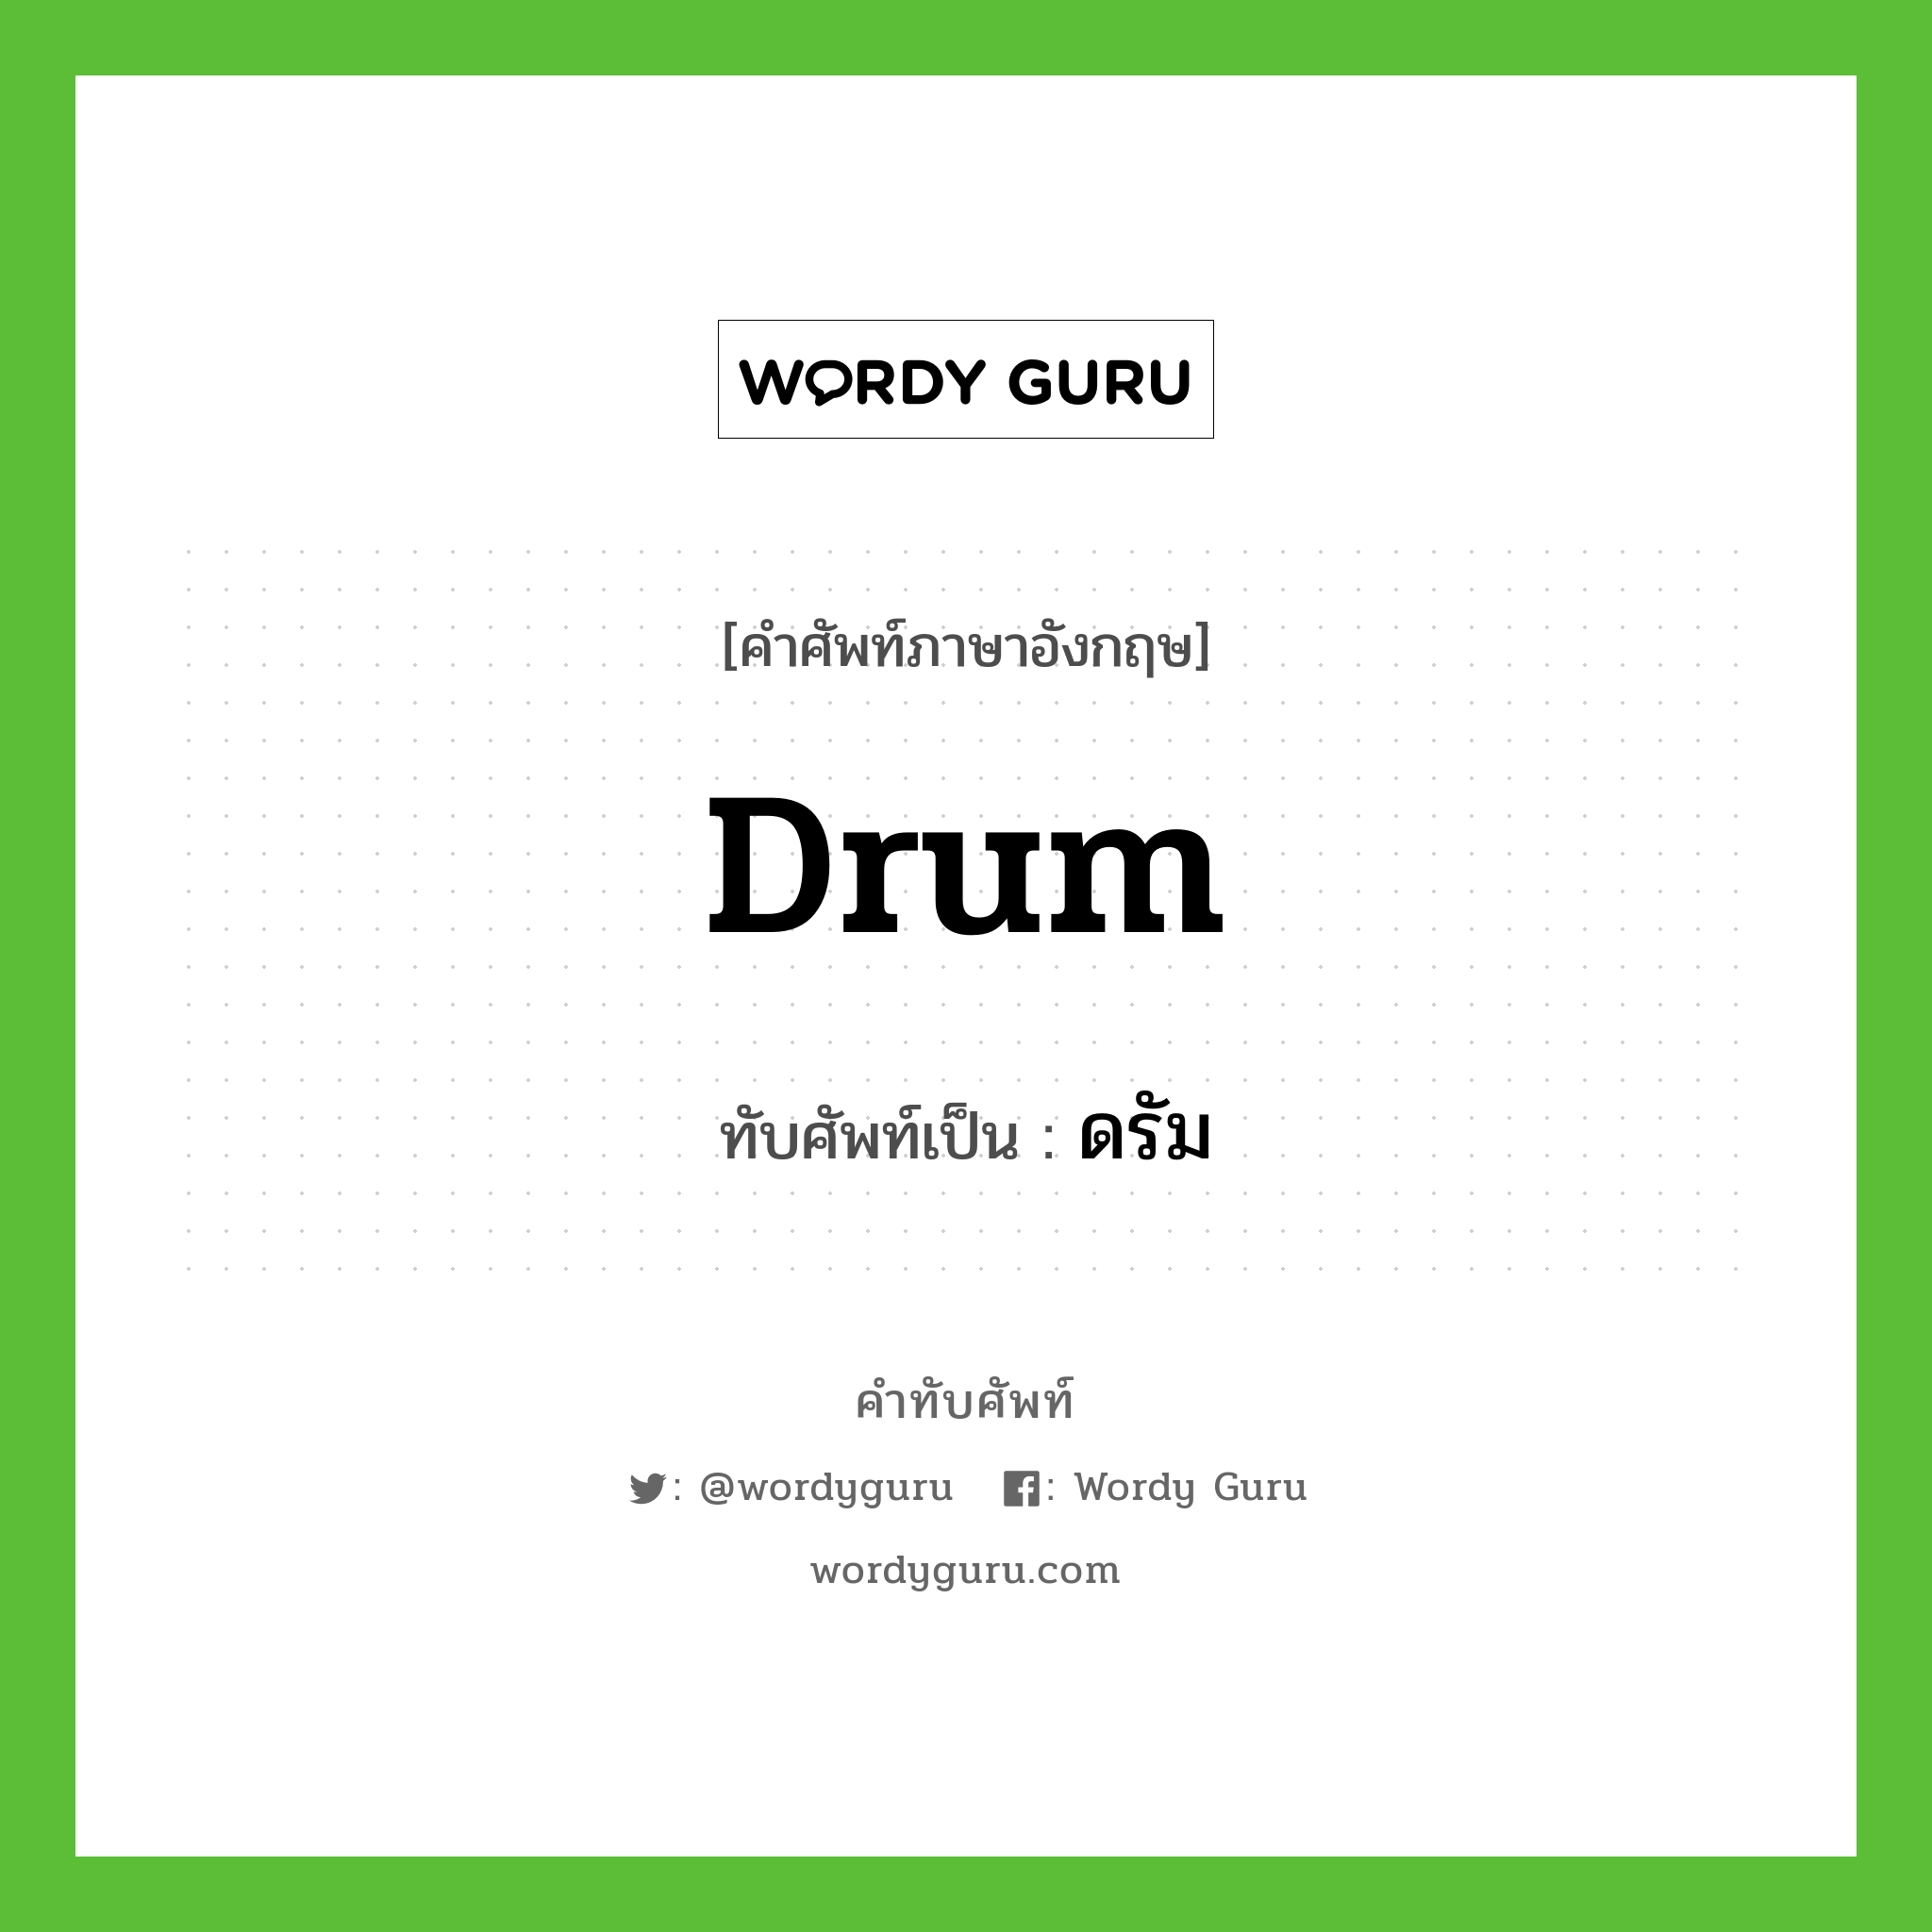 drum เขียนเป็นคำไทยว่าอะไร?, คำศัพท์ภาษาอังกฤษ drum ทับศัพท์เป็น ดรัม